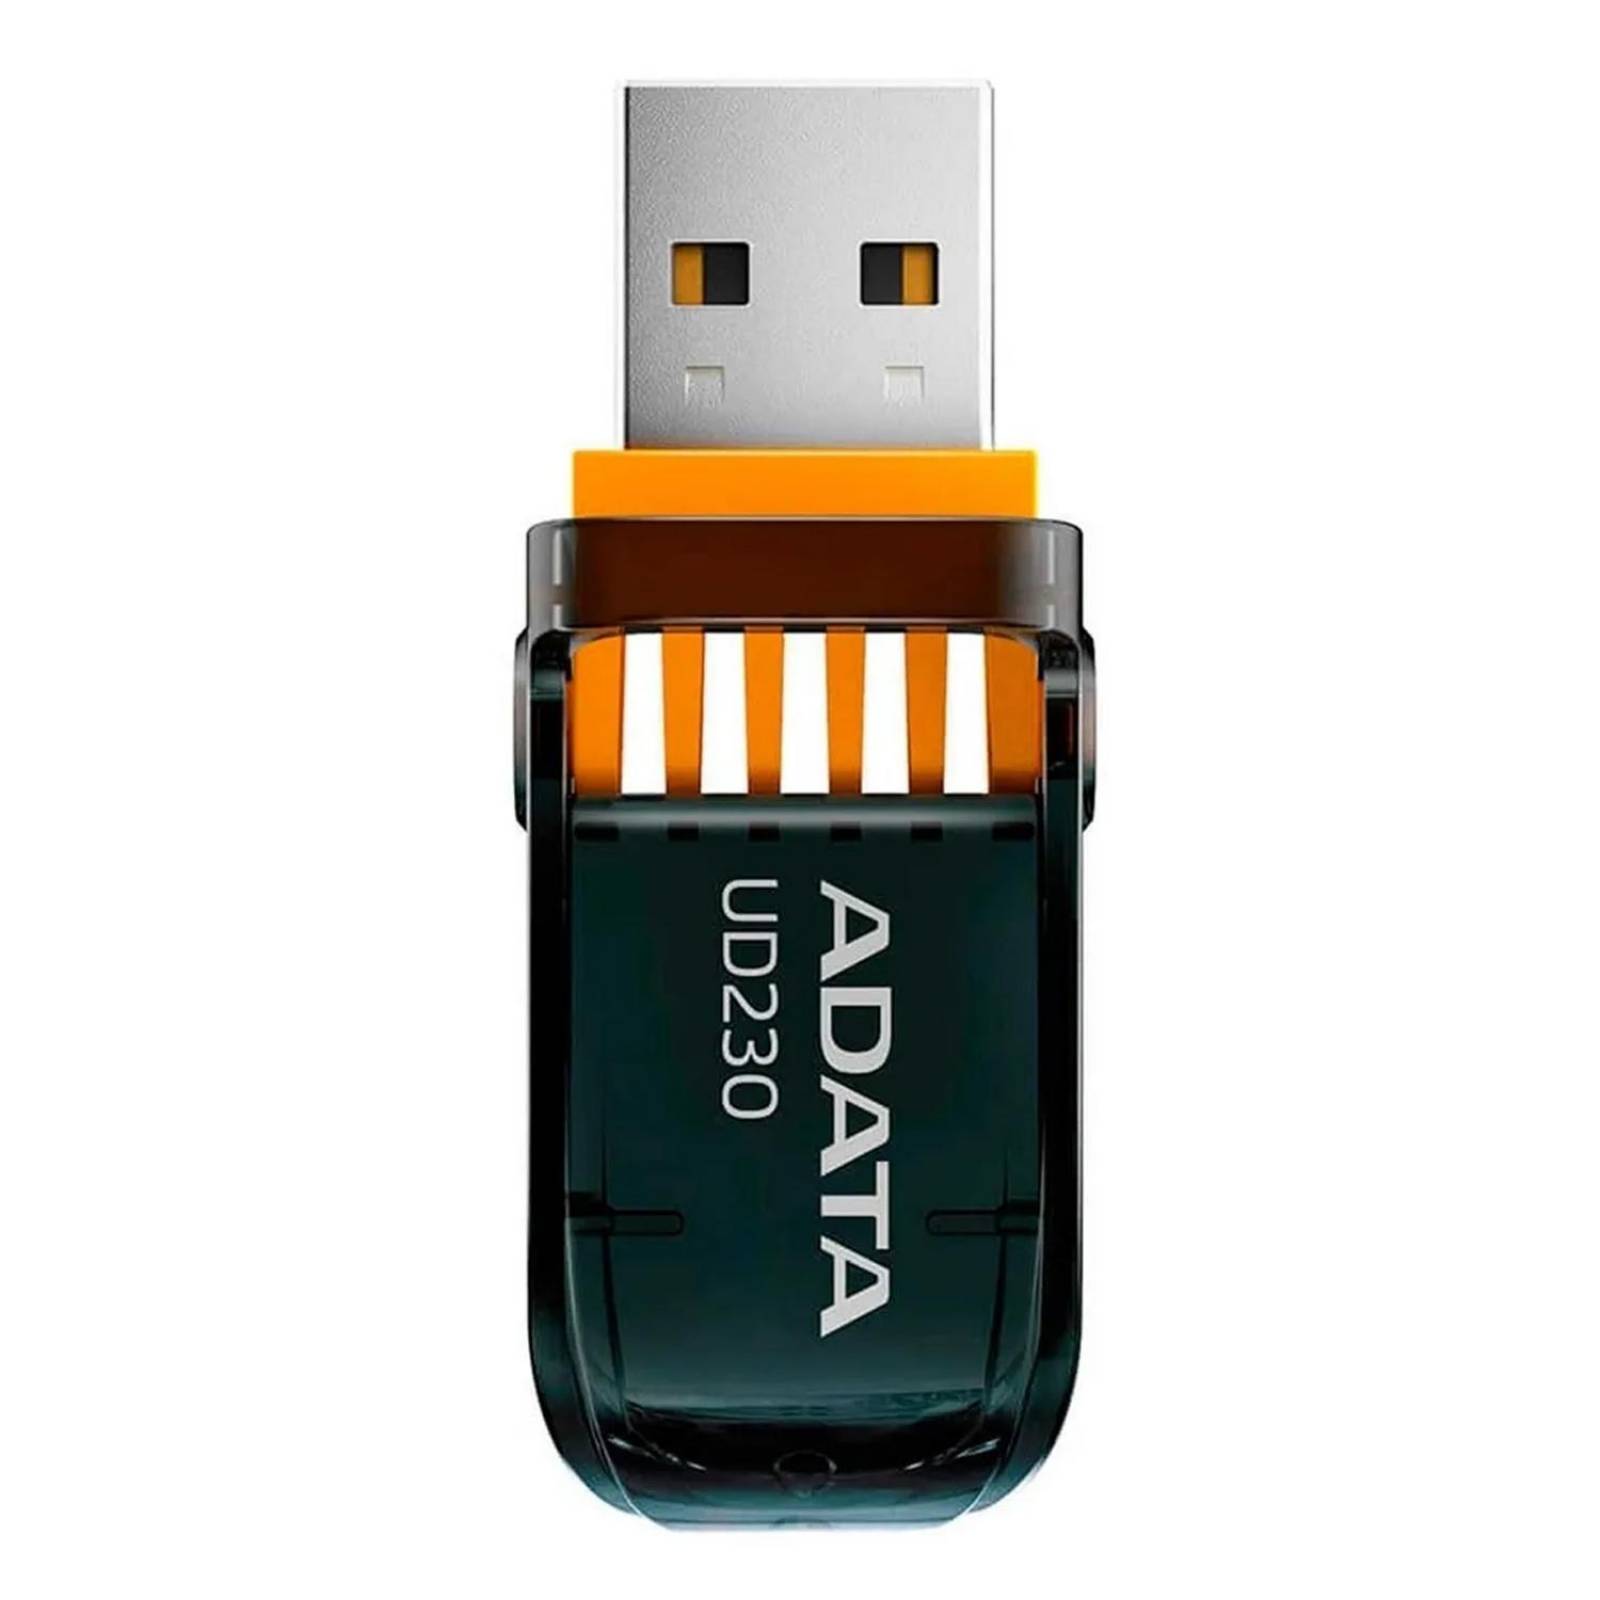 Memoria USB 64GB ADATA UD230 2.0 Retractil Flash Drive AUD230-64G-RBK 